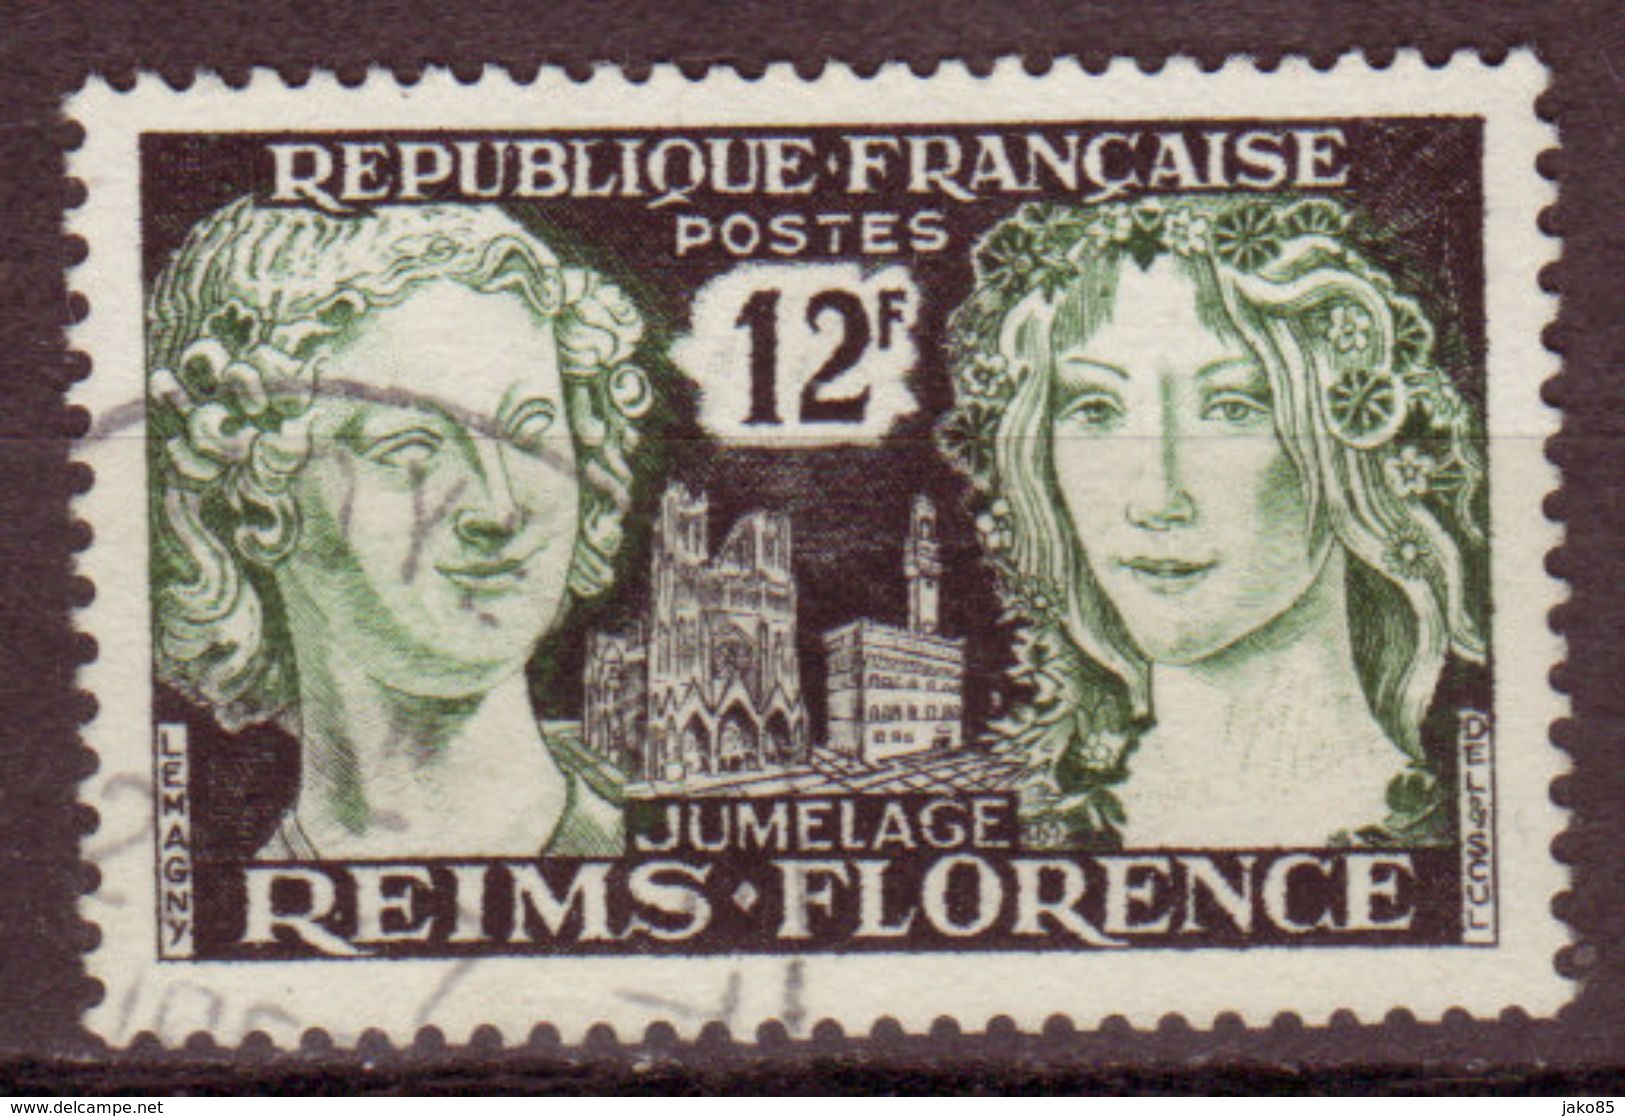 FRANCE - 1956 - YT N° 1061 - Oblitéré - Jumelage Reims- Florence - Usados